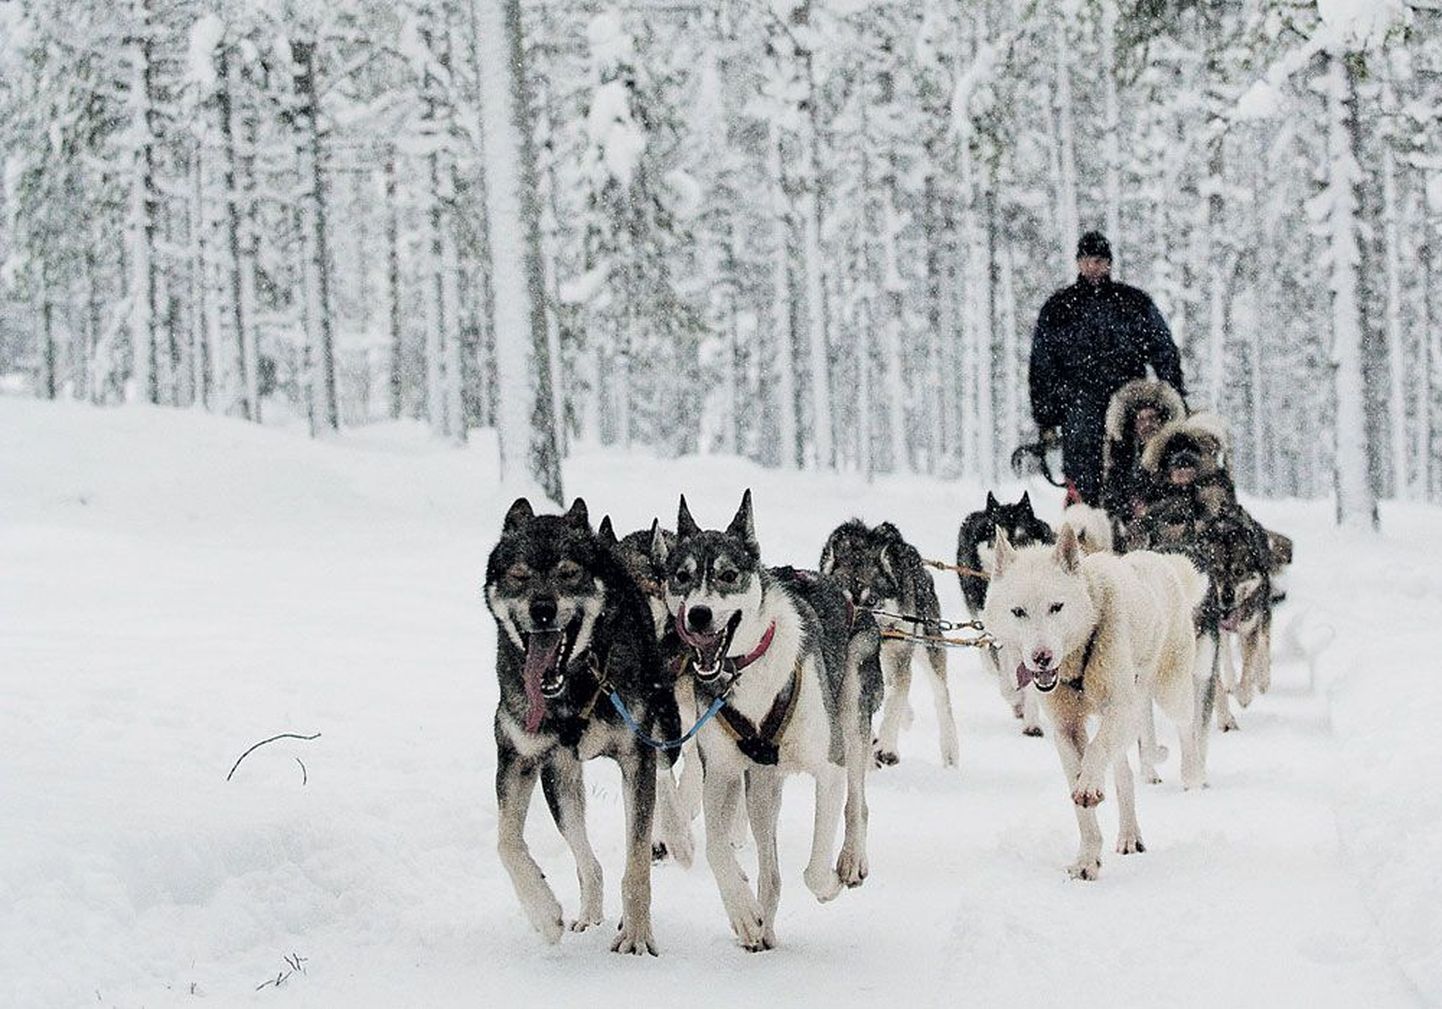 Катание на собачьих упряжках — одно из самых незабываемых впечатлений от посещения Лапландии.